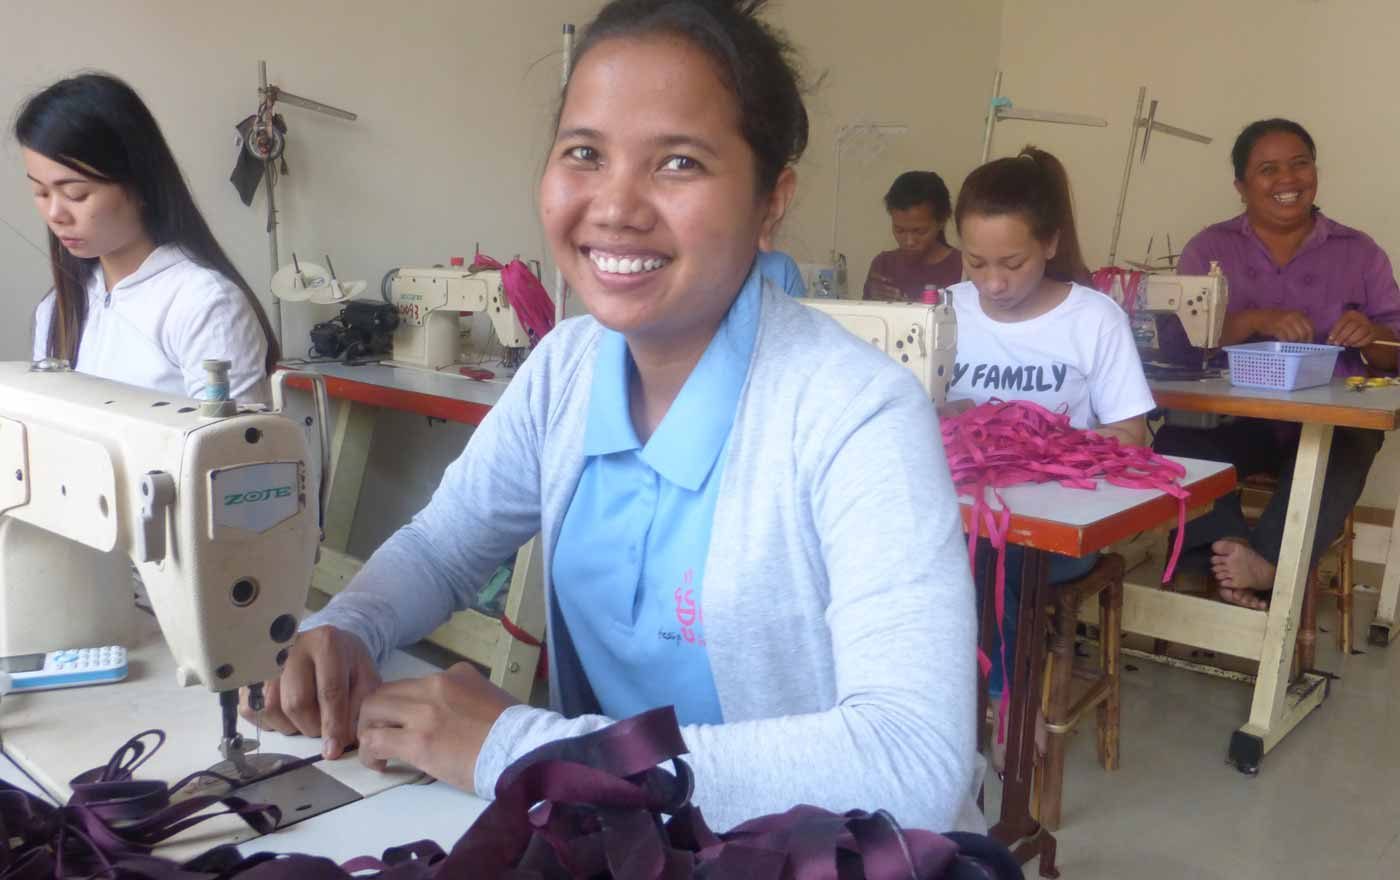 Gerechten Lohn und faire Arbeitsbedingungen fordern zahlreiche Stellungnahmen zum Weltfrauentag. Im Bild eine Nähwerkstatt in Kambodscha, die durch Brot für die Welt unterstützt wird. Foto: A. Kolodziejczyk